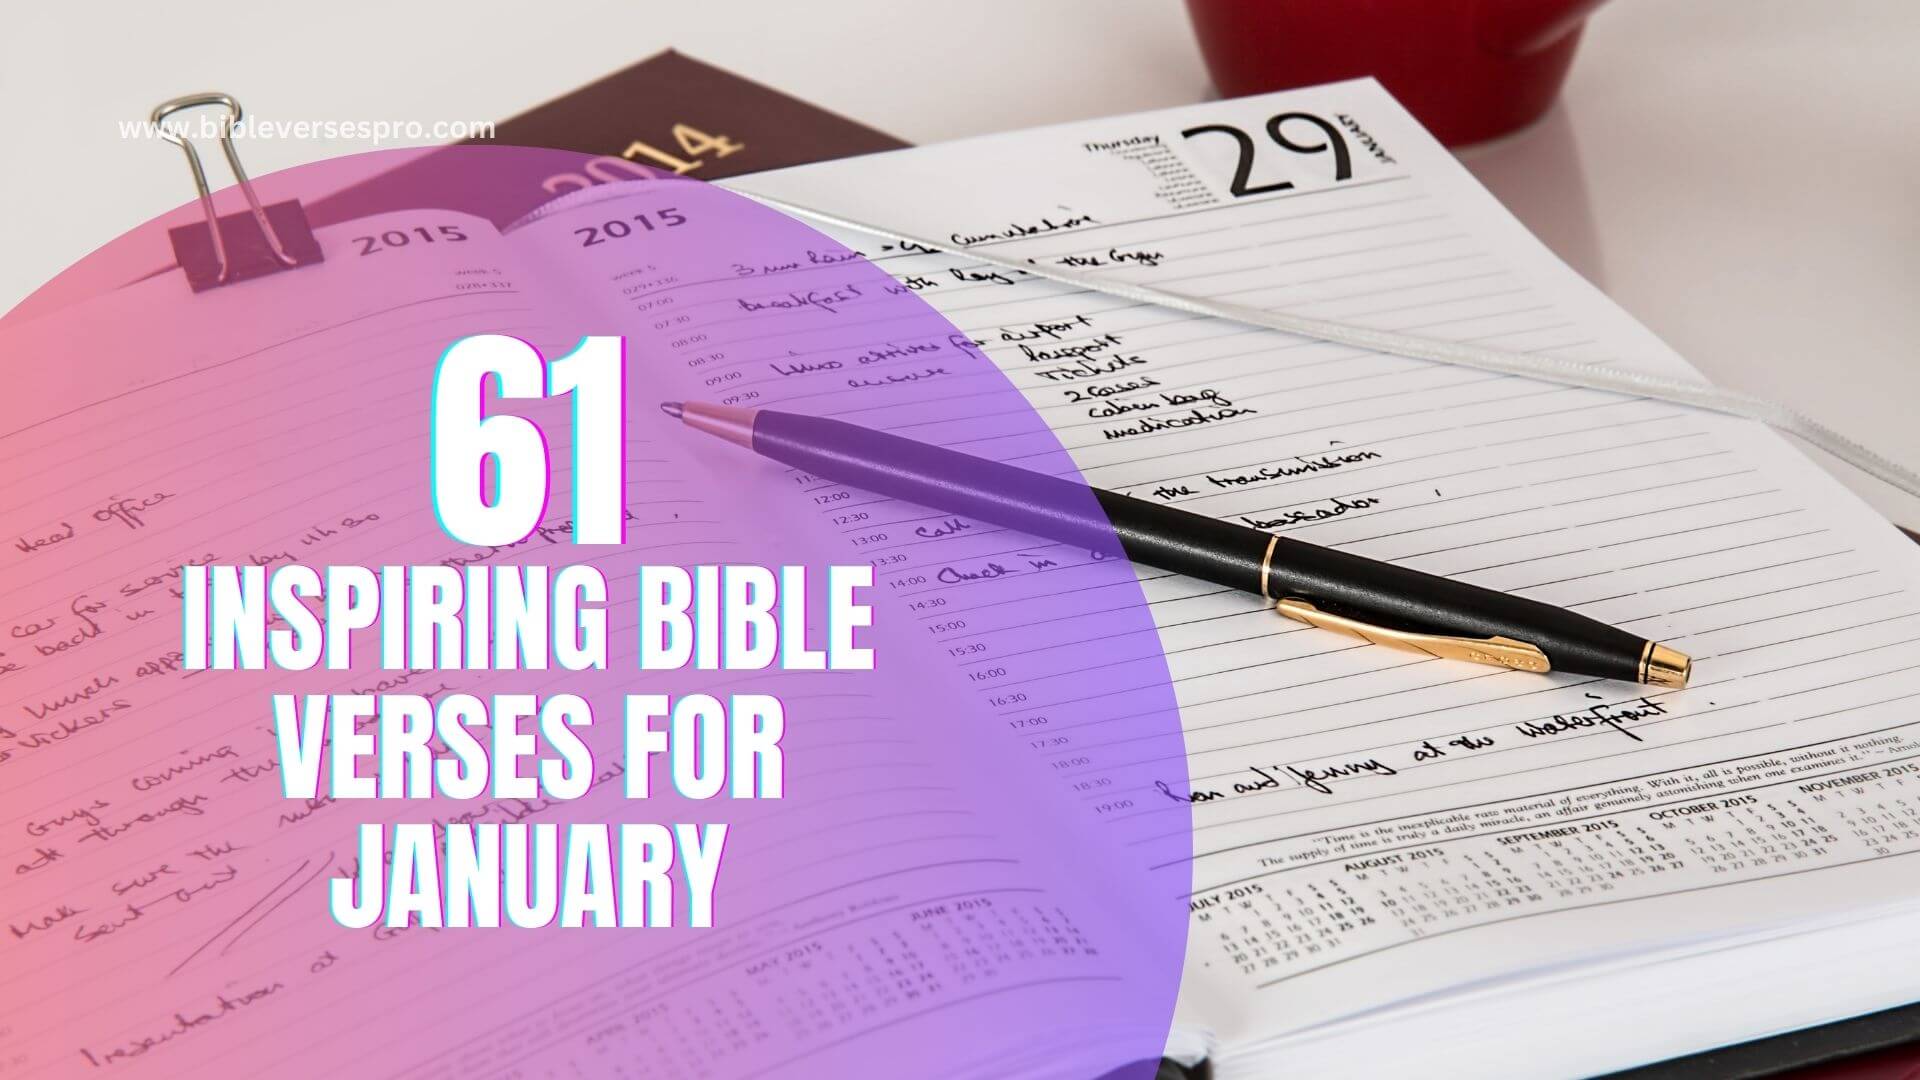 INSPIRING BIBLE VERSES FOR JANUARY (1)